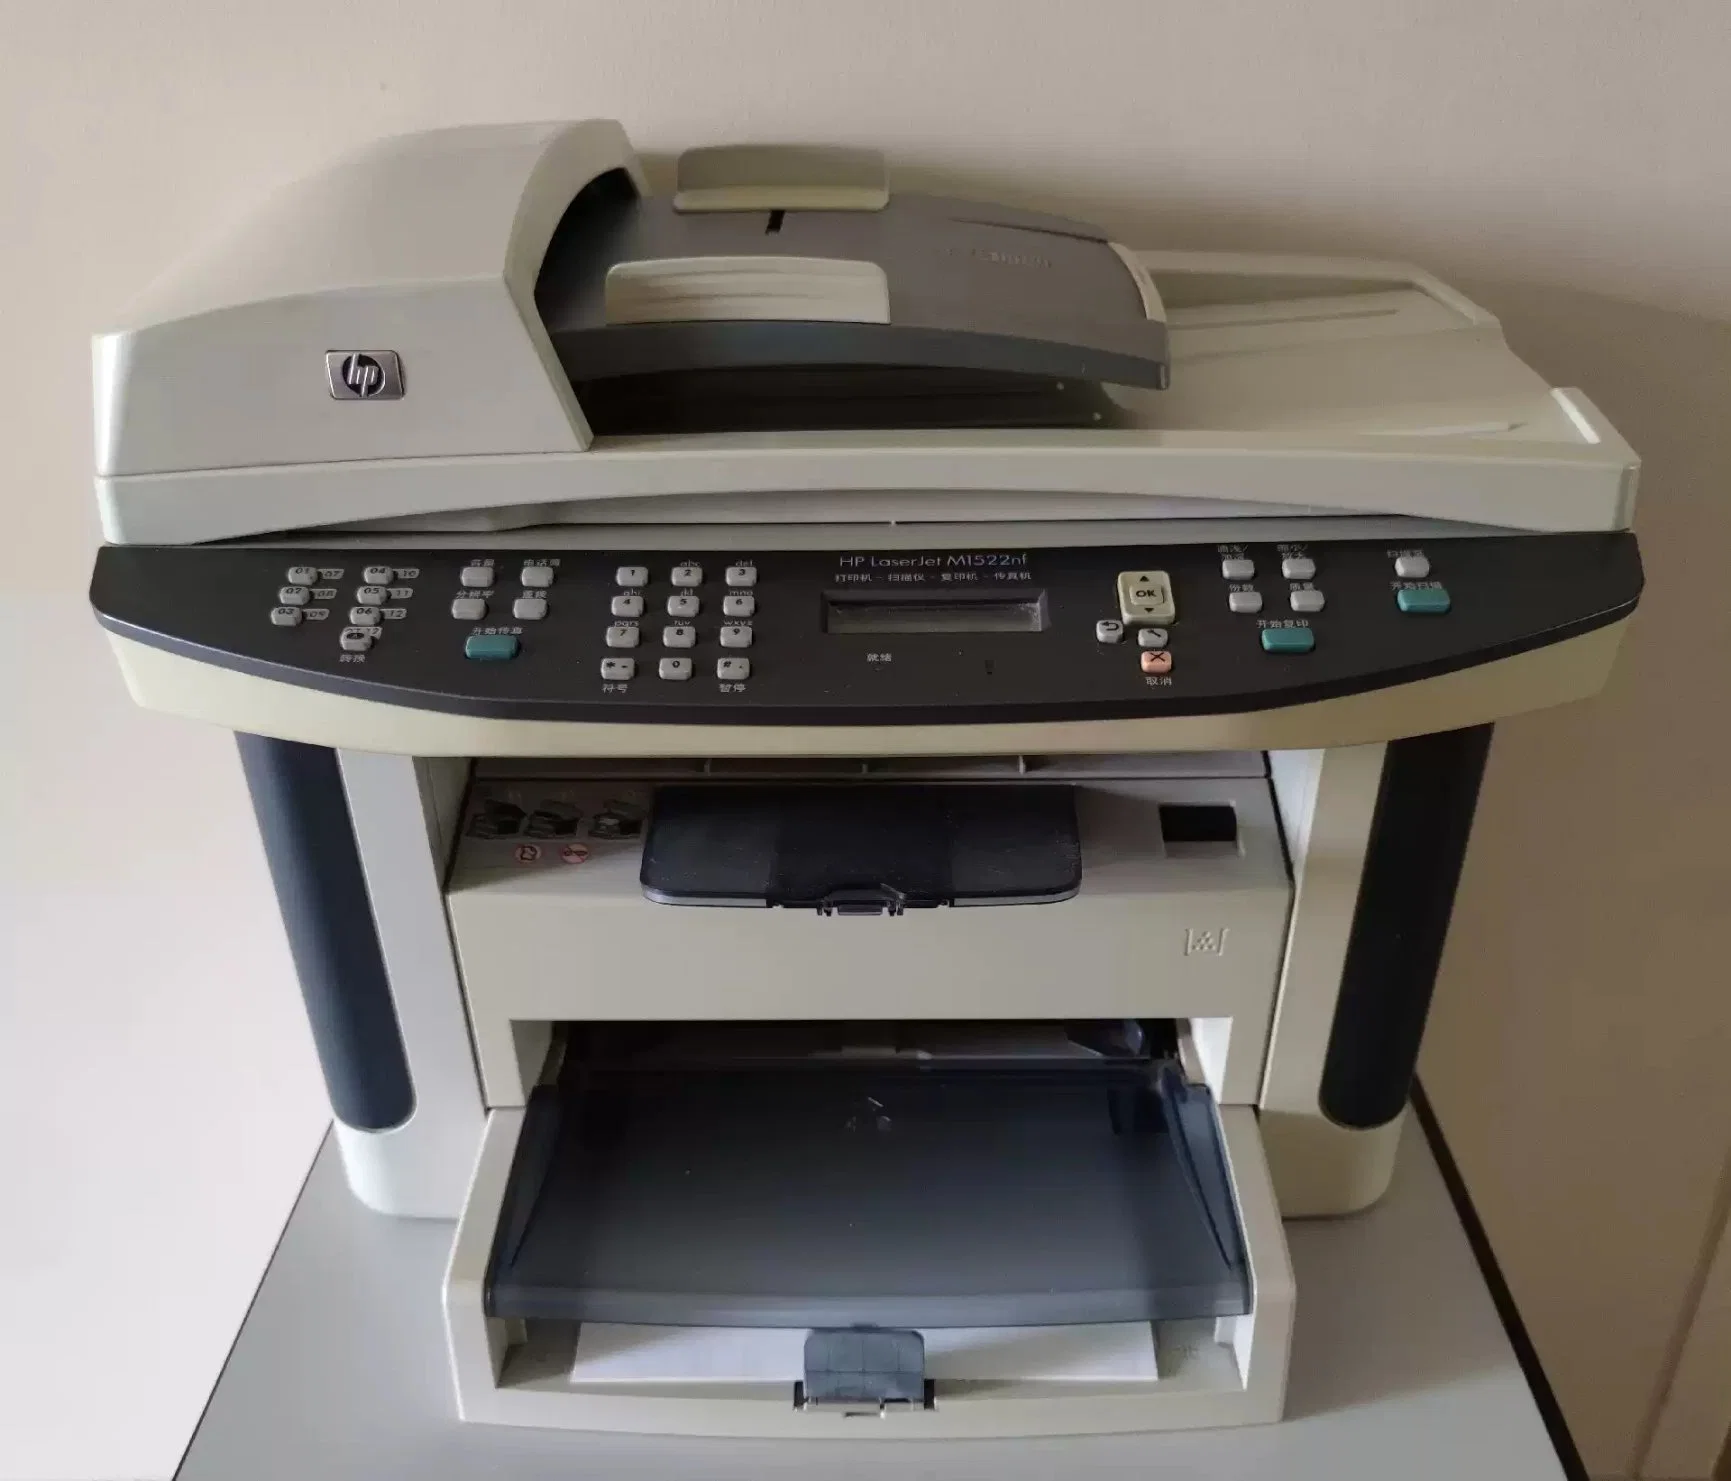 De segunda mano Impresoras Láser HP M1522 para HP Laserjet M1522nf impresora multifunción soporte de la máquina de fax escaneado copia impresa utiliza HP Laserjet M1522nf impresora